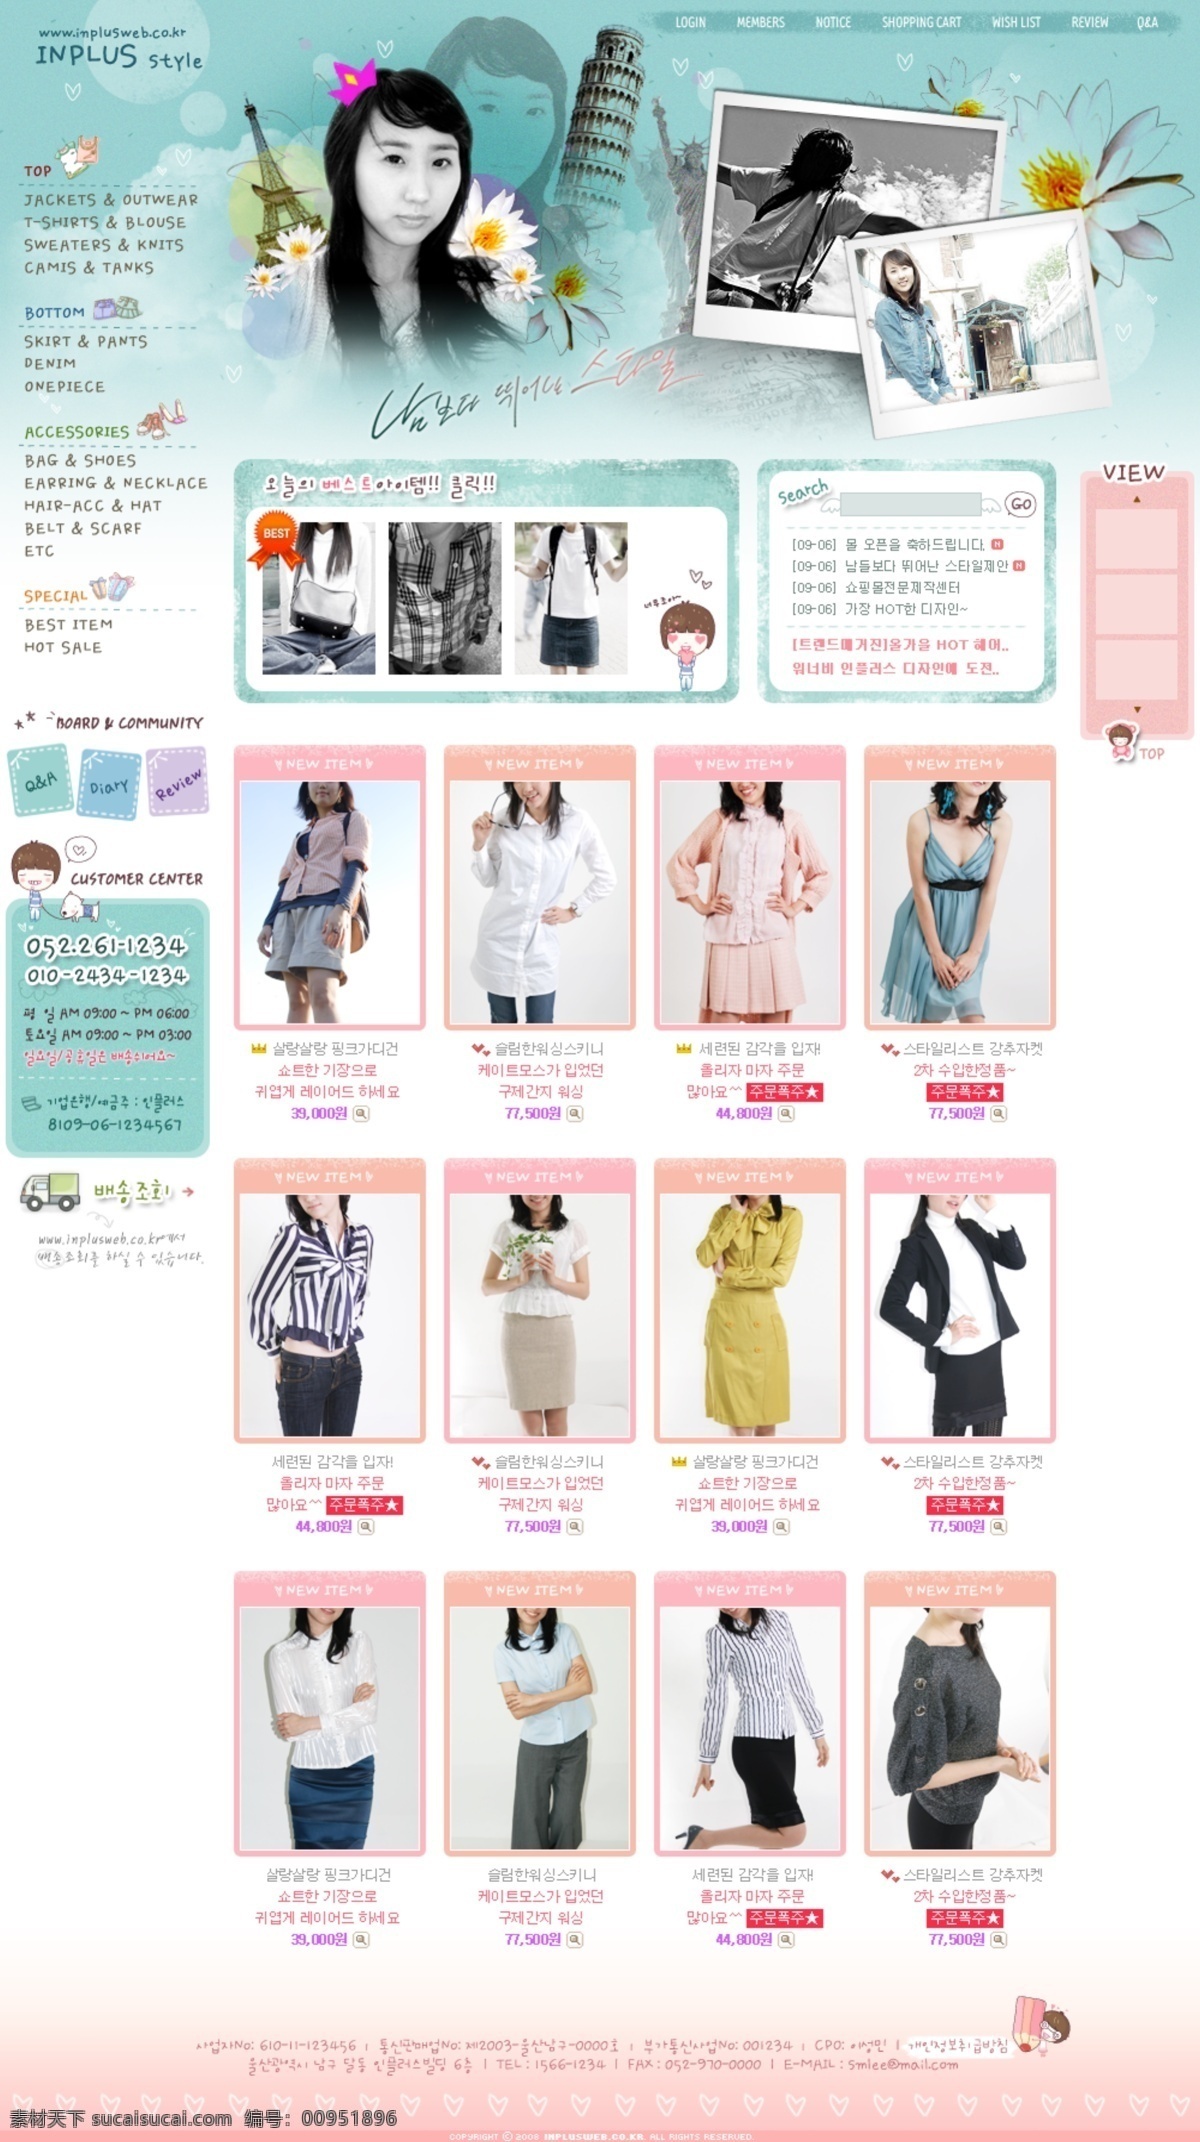 产品网页 韩国网页模版 网页模板 网站psd 网站素材 源文件 衣服网页 产品 网页 韩文模板 网页素材